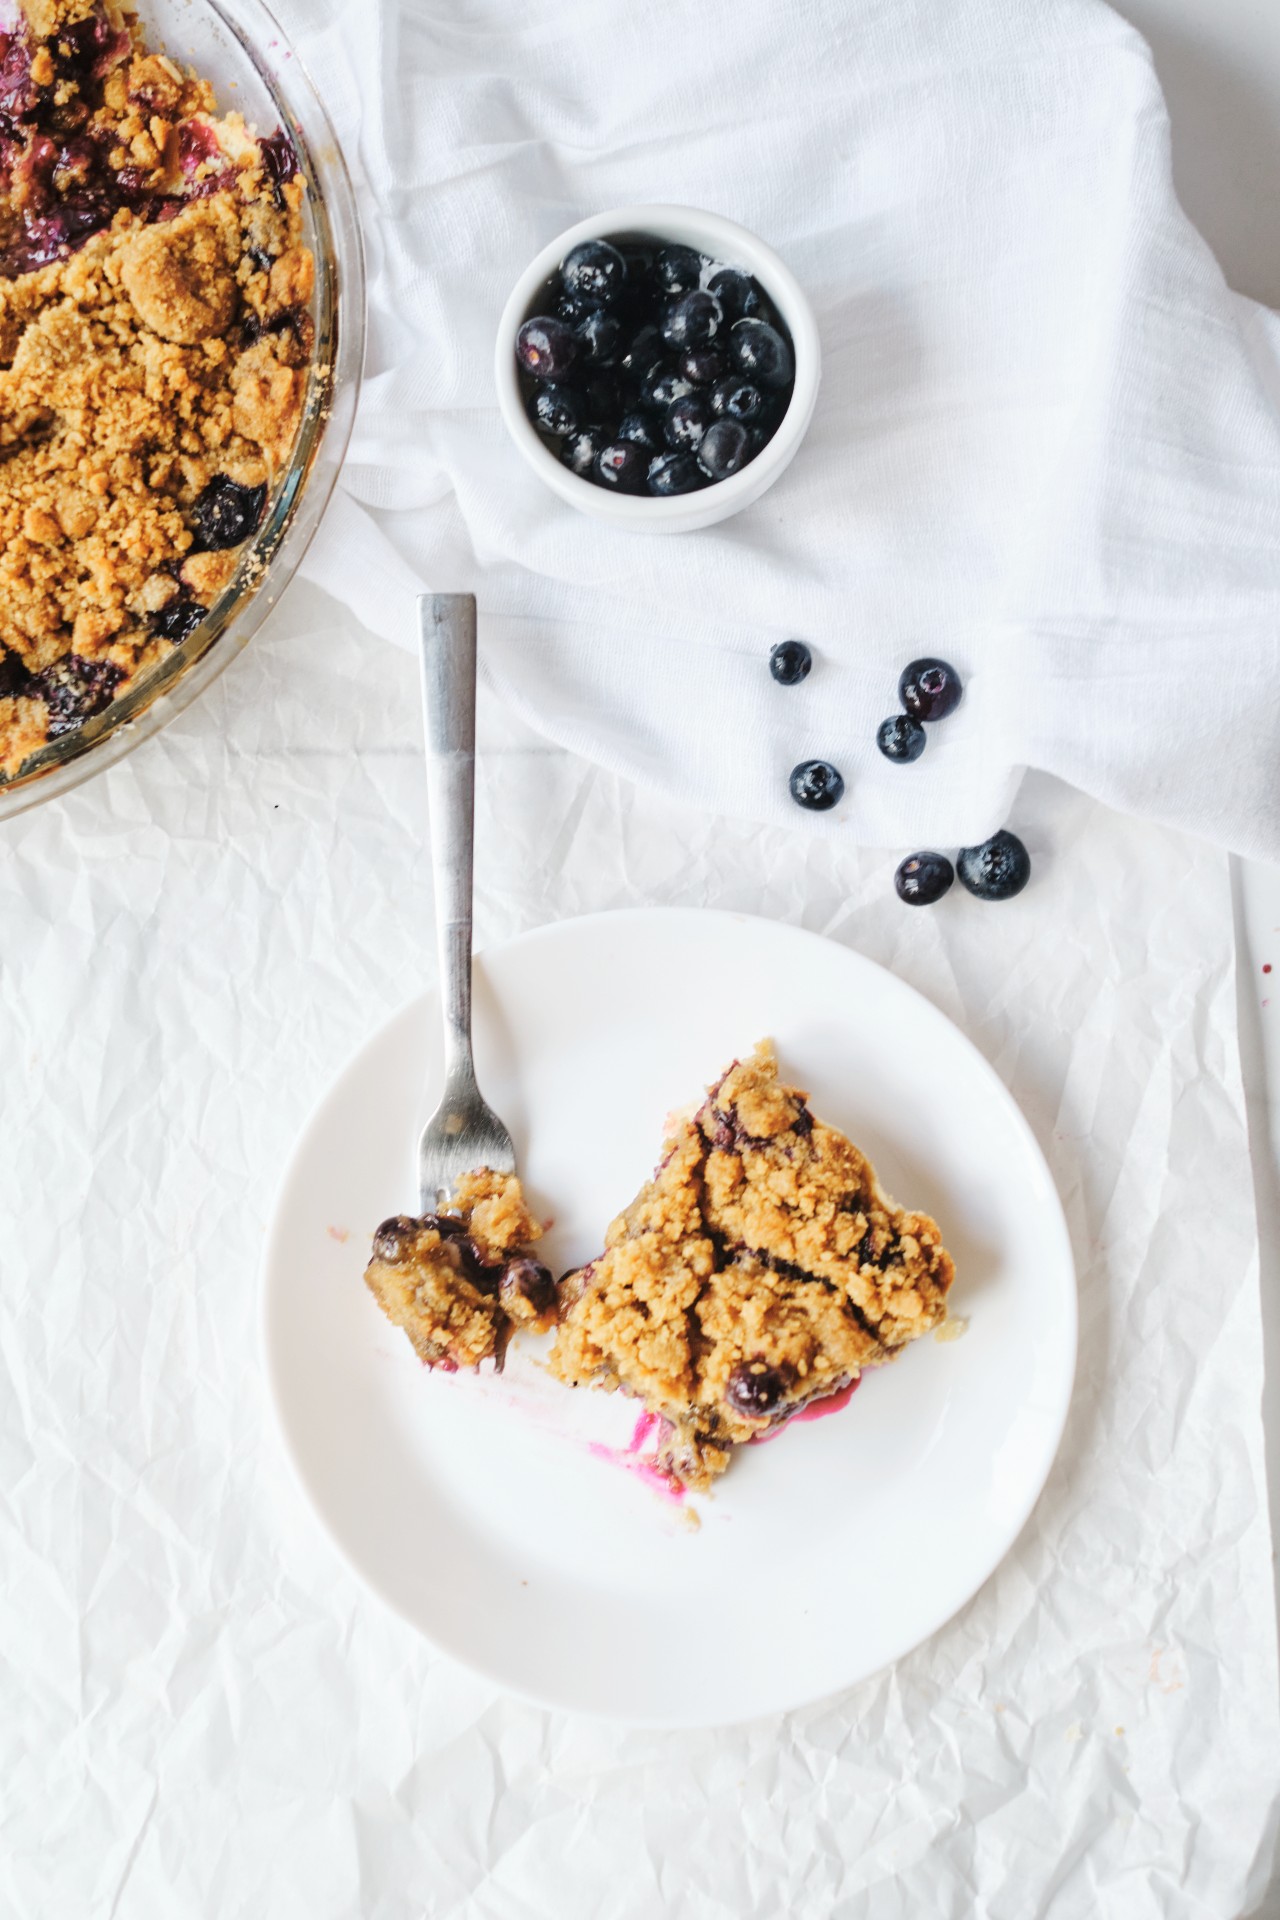 Blueberry Crumble Pie Recipe